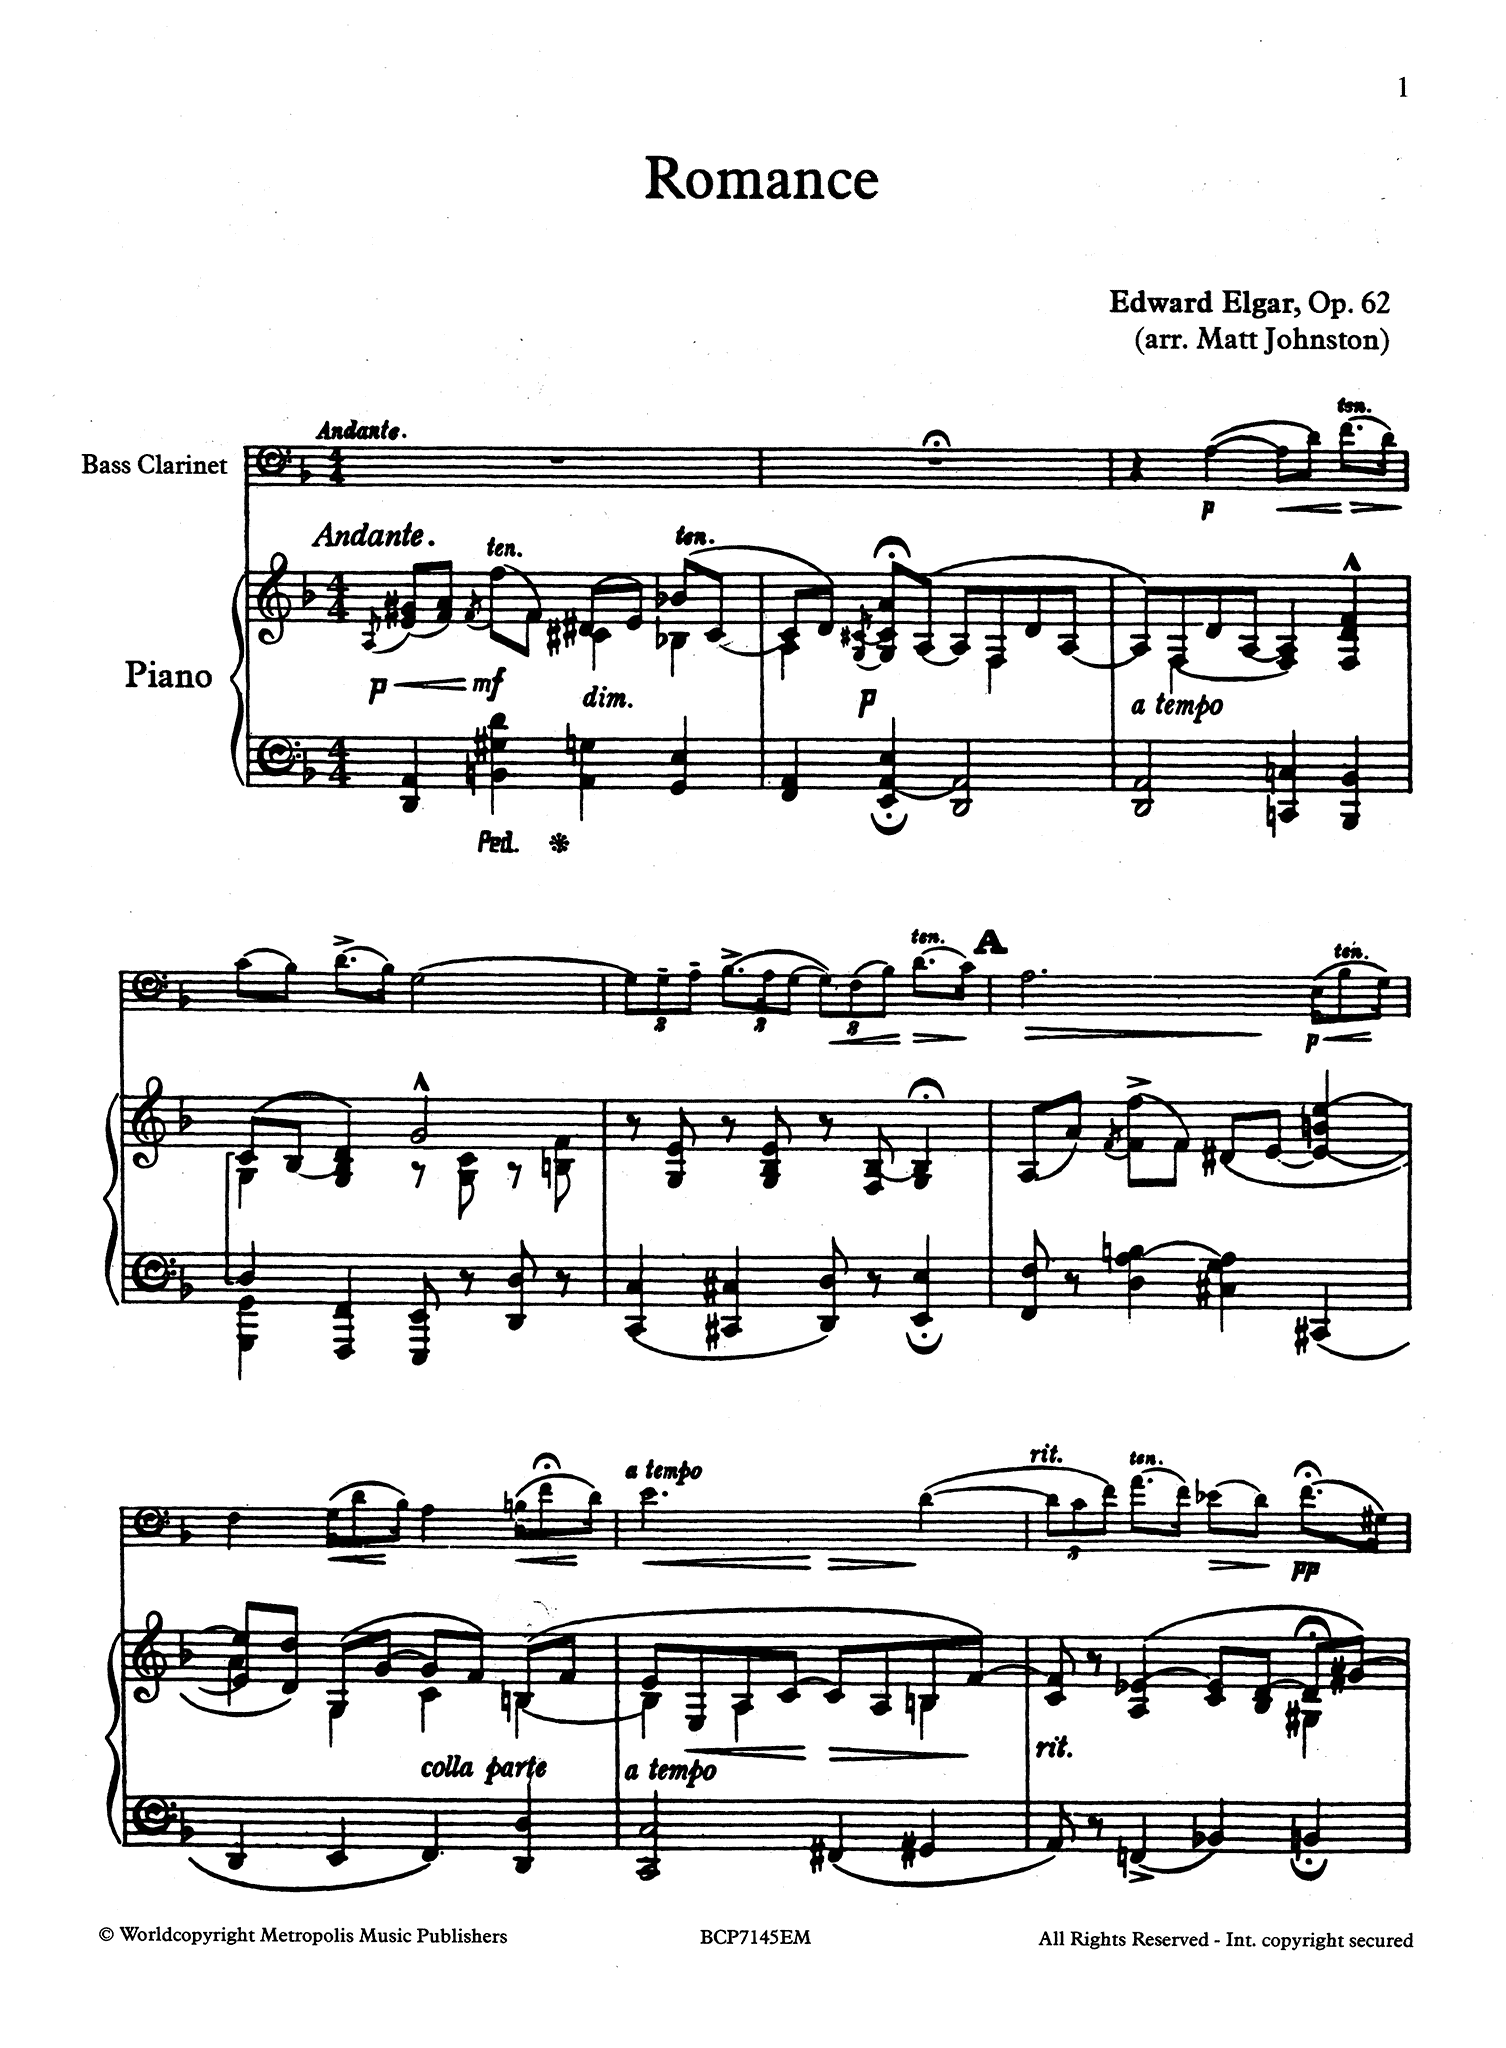 Elgar, Edward Romance, Op. 62 bass clarinet arrangement score